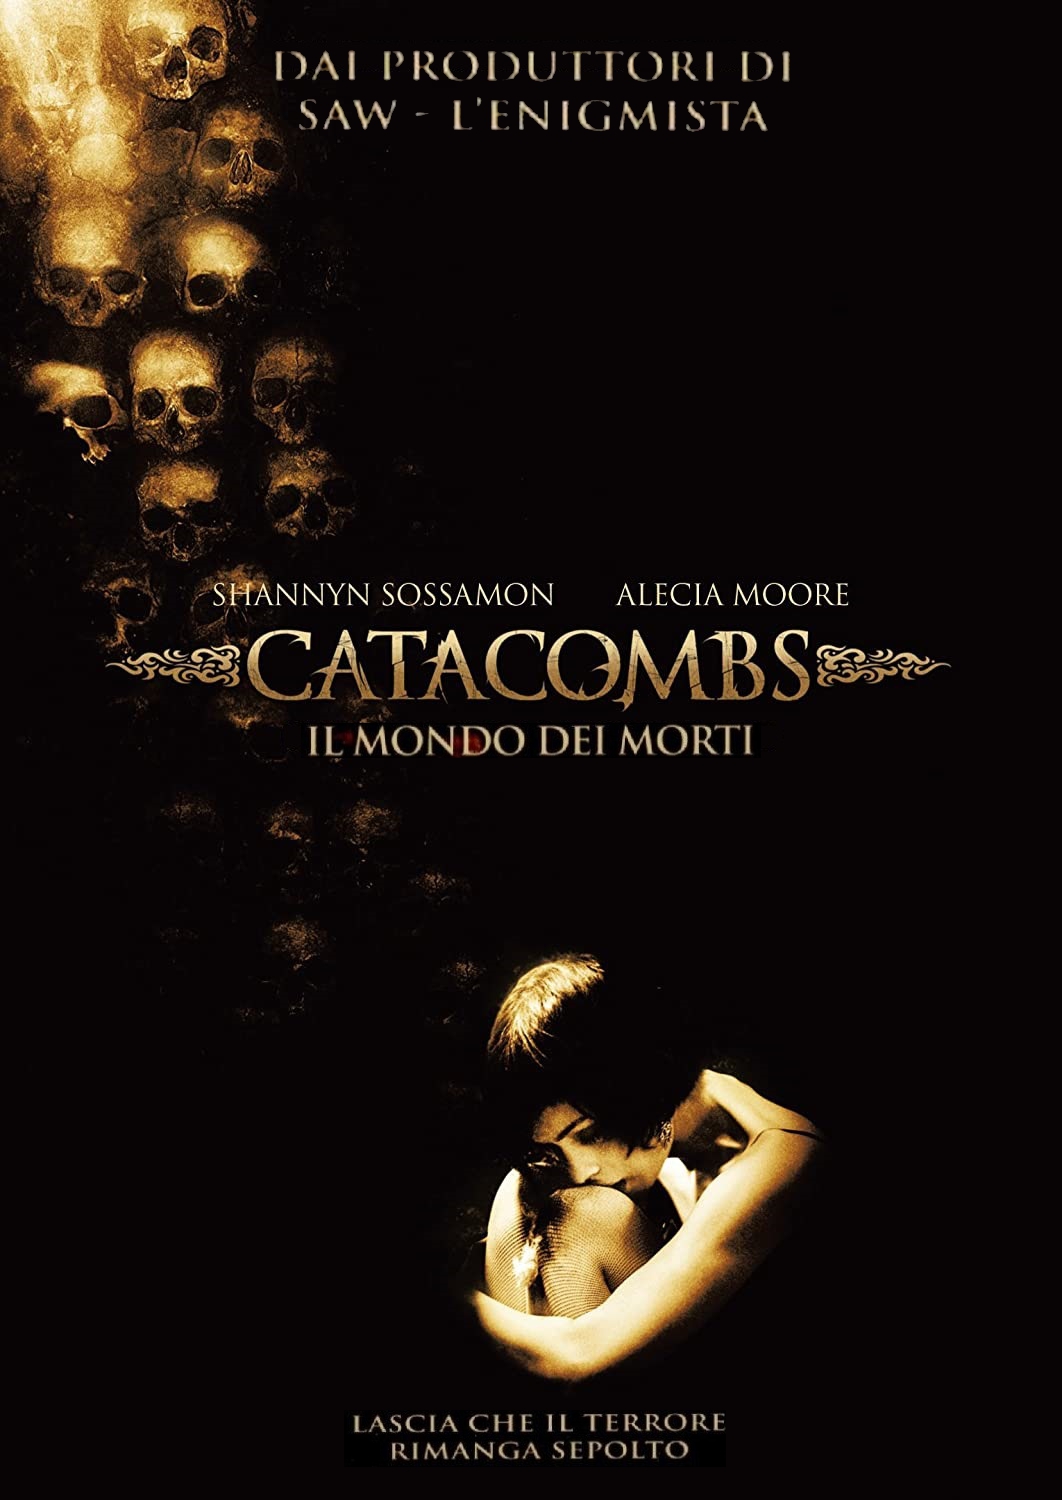 Catacombs – Il mondo dei morti (2007)